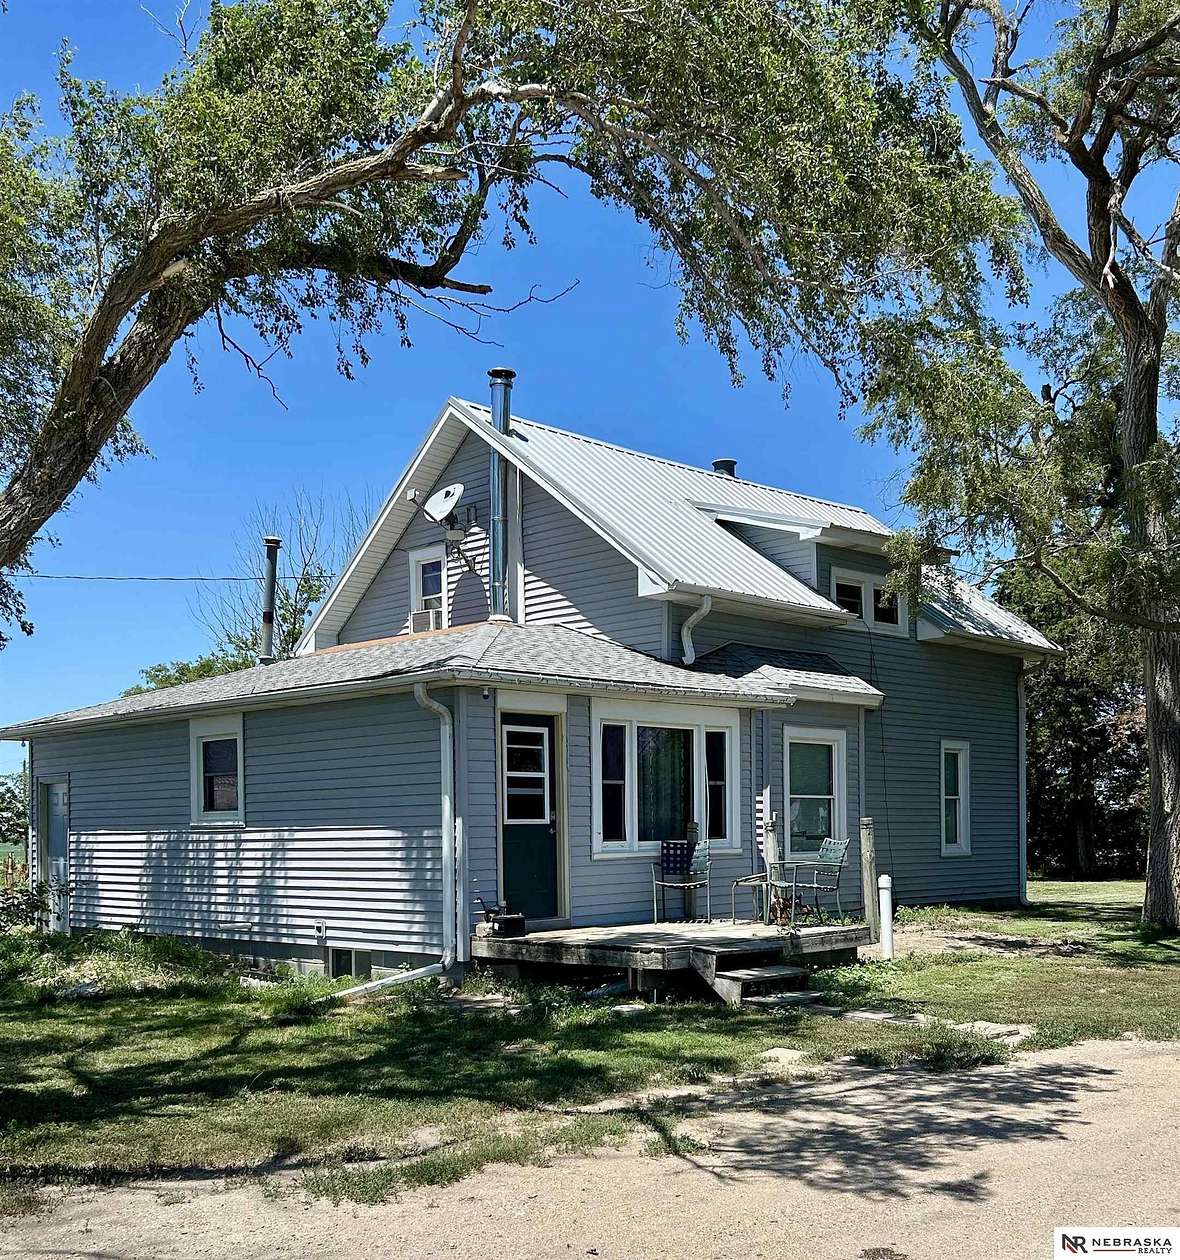 20.1 Acres of Land with Home for Sale in De Witt, Nebraska